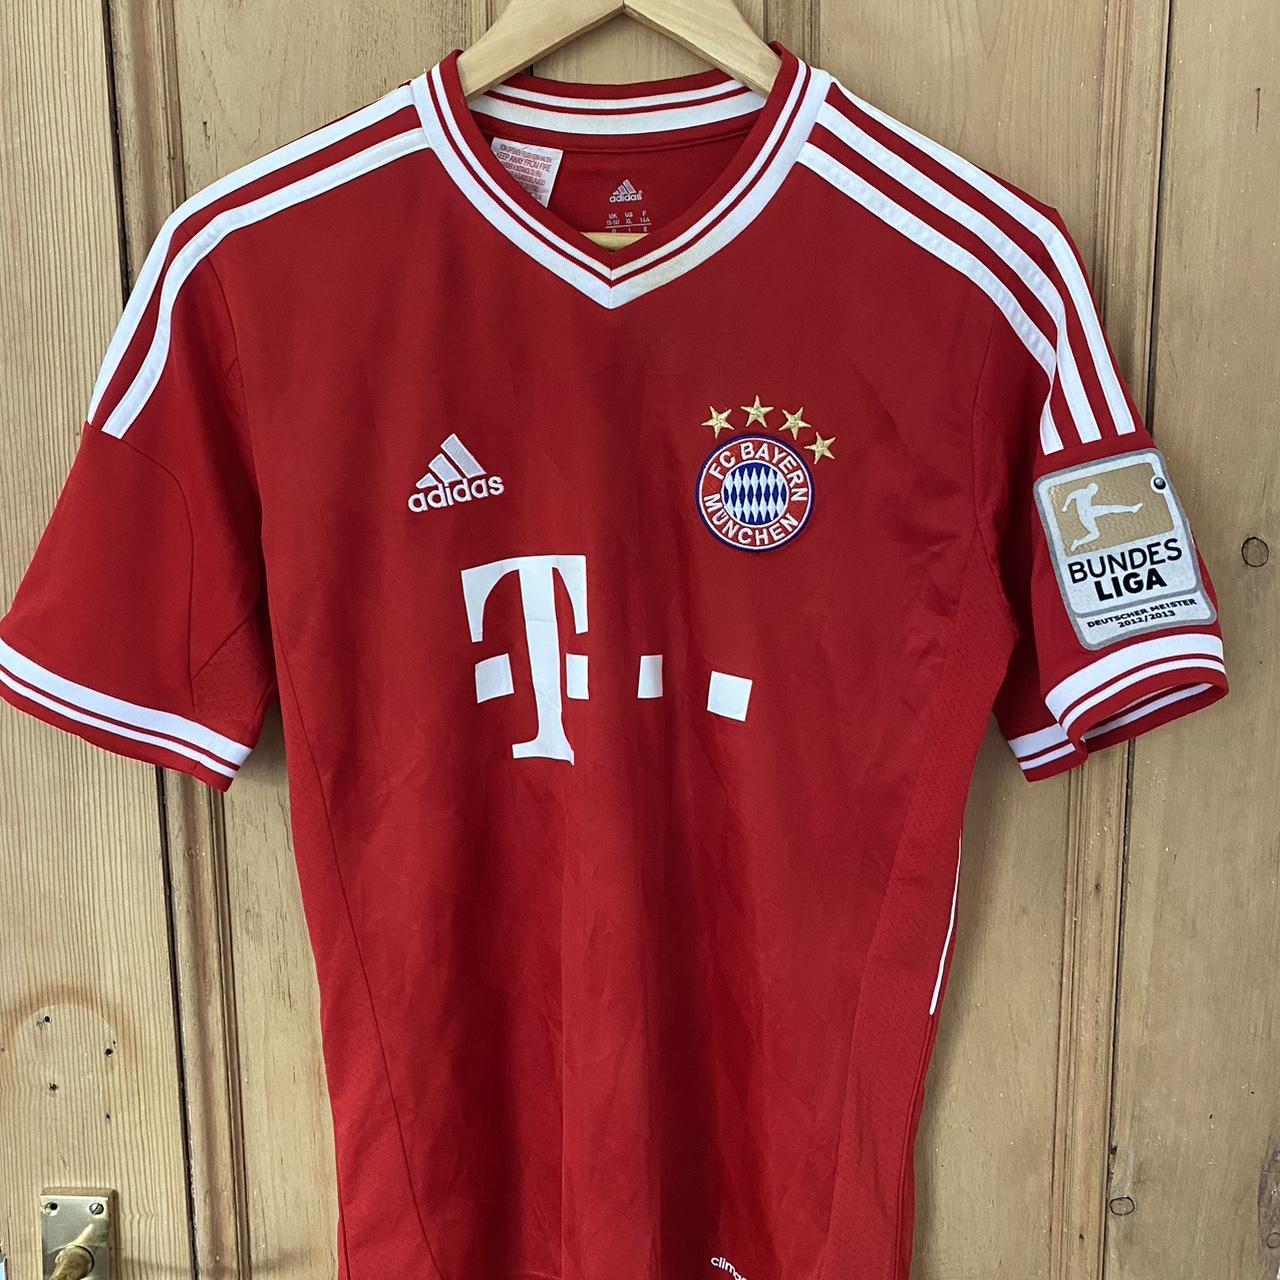 Bayern boys 15-16y shirt Martinez on the back adidas... - Depop